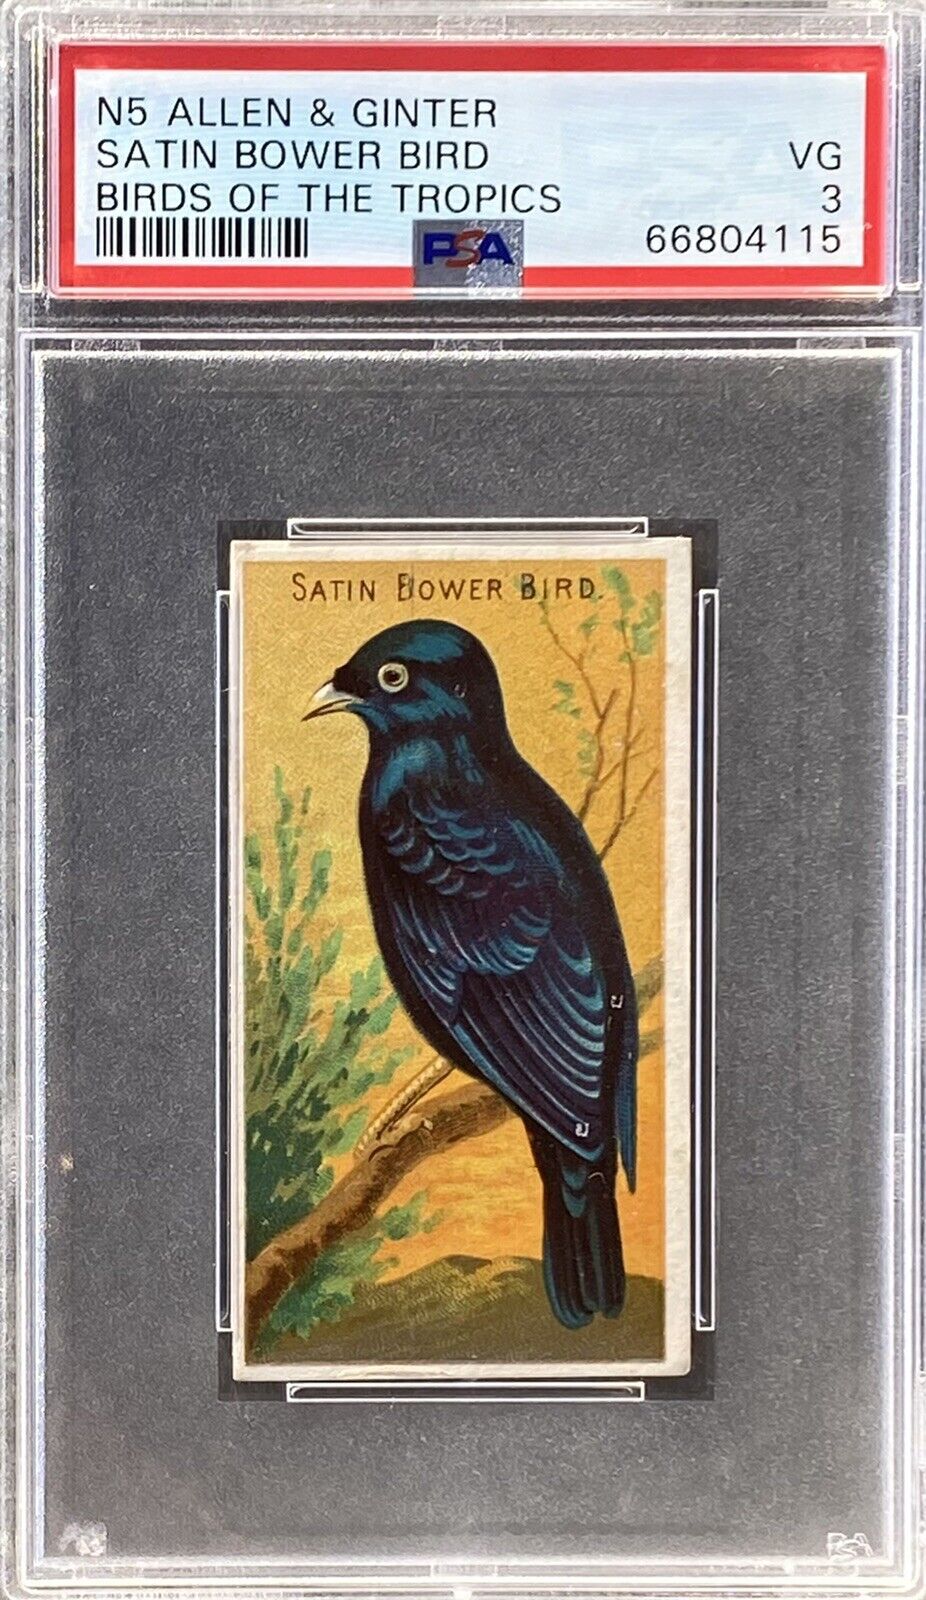 1889 N5 Allen & Ginter Birds Of The Tropics SATIN BOWER BIRD PSA 3 VG